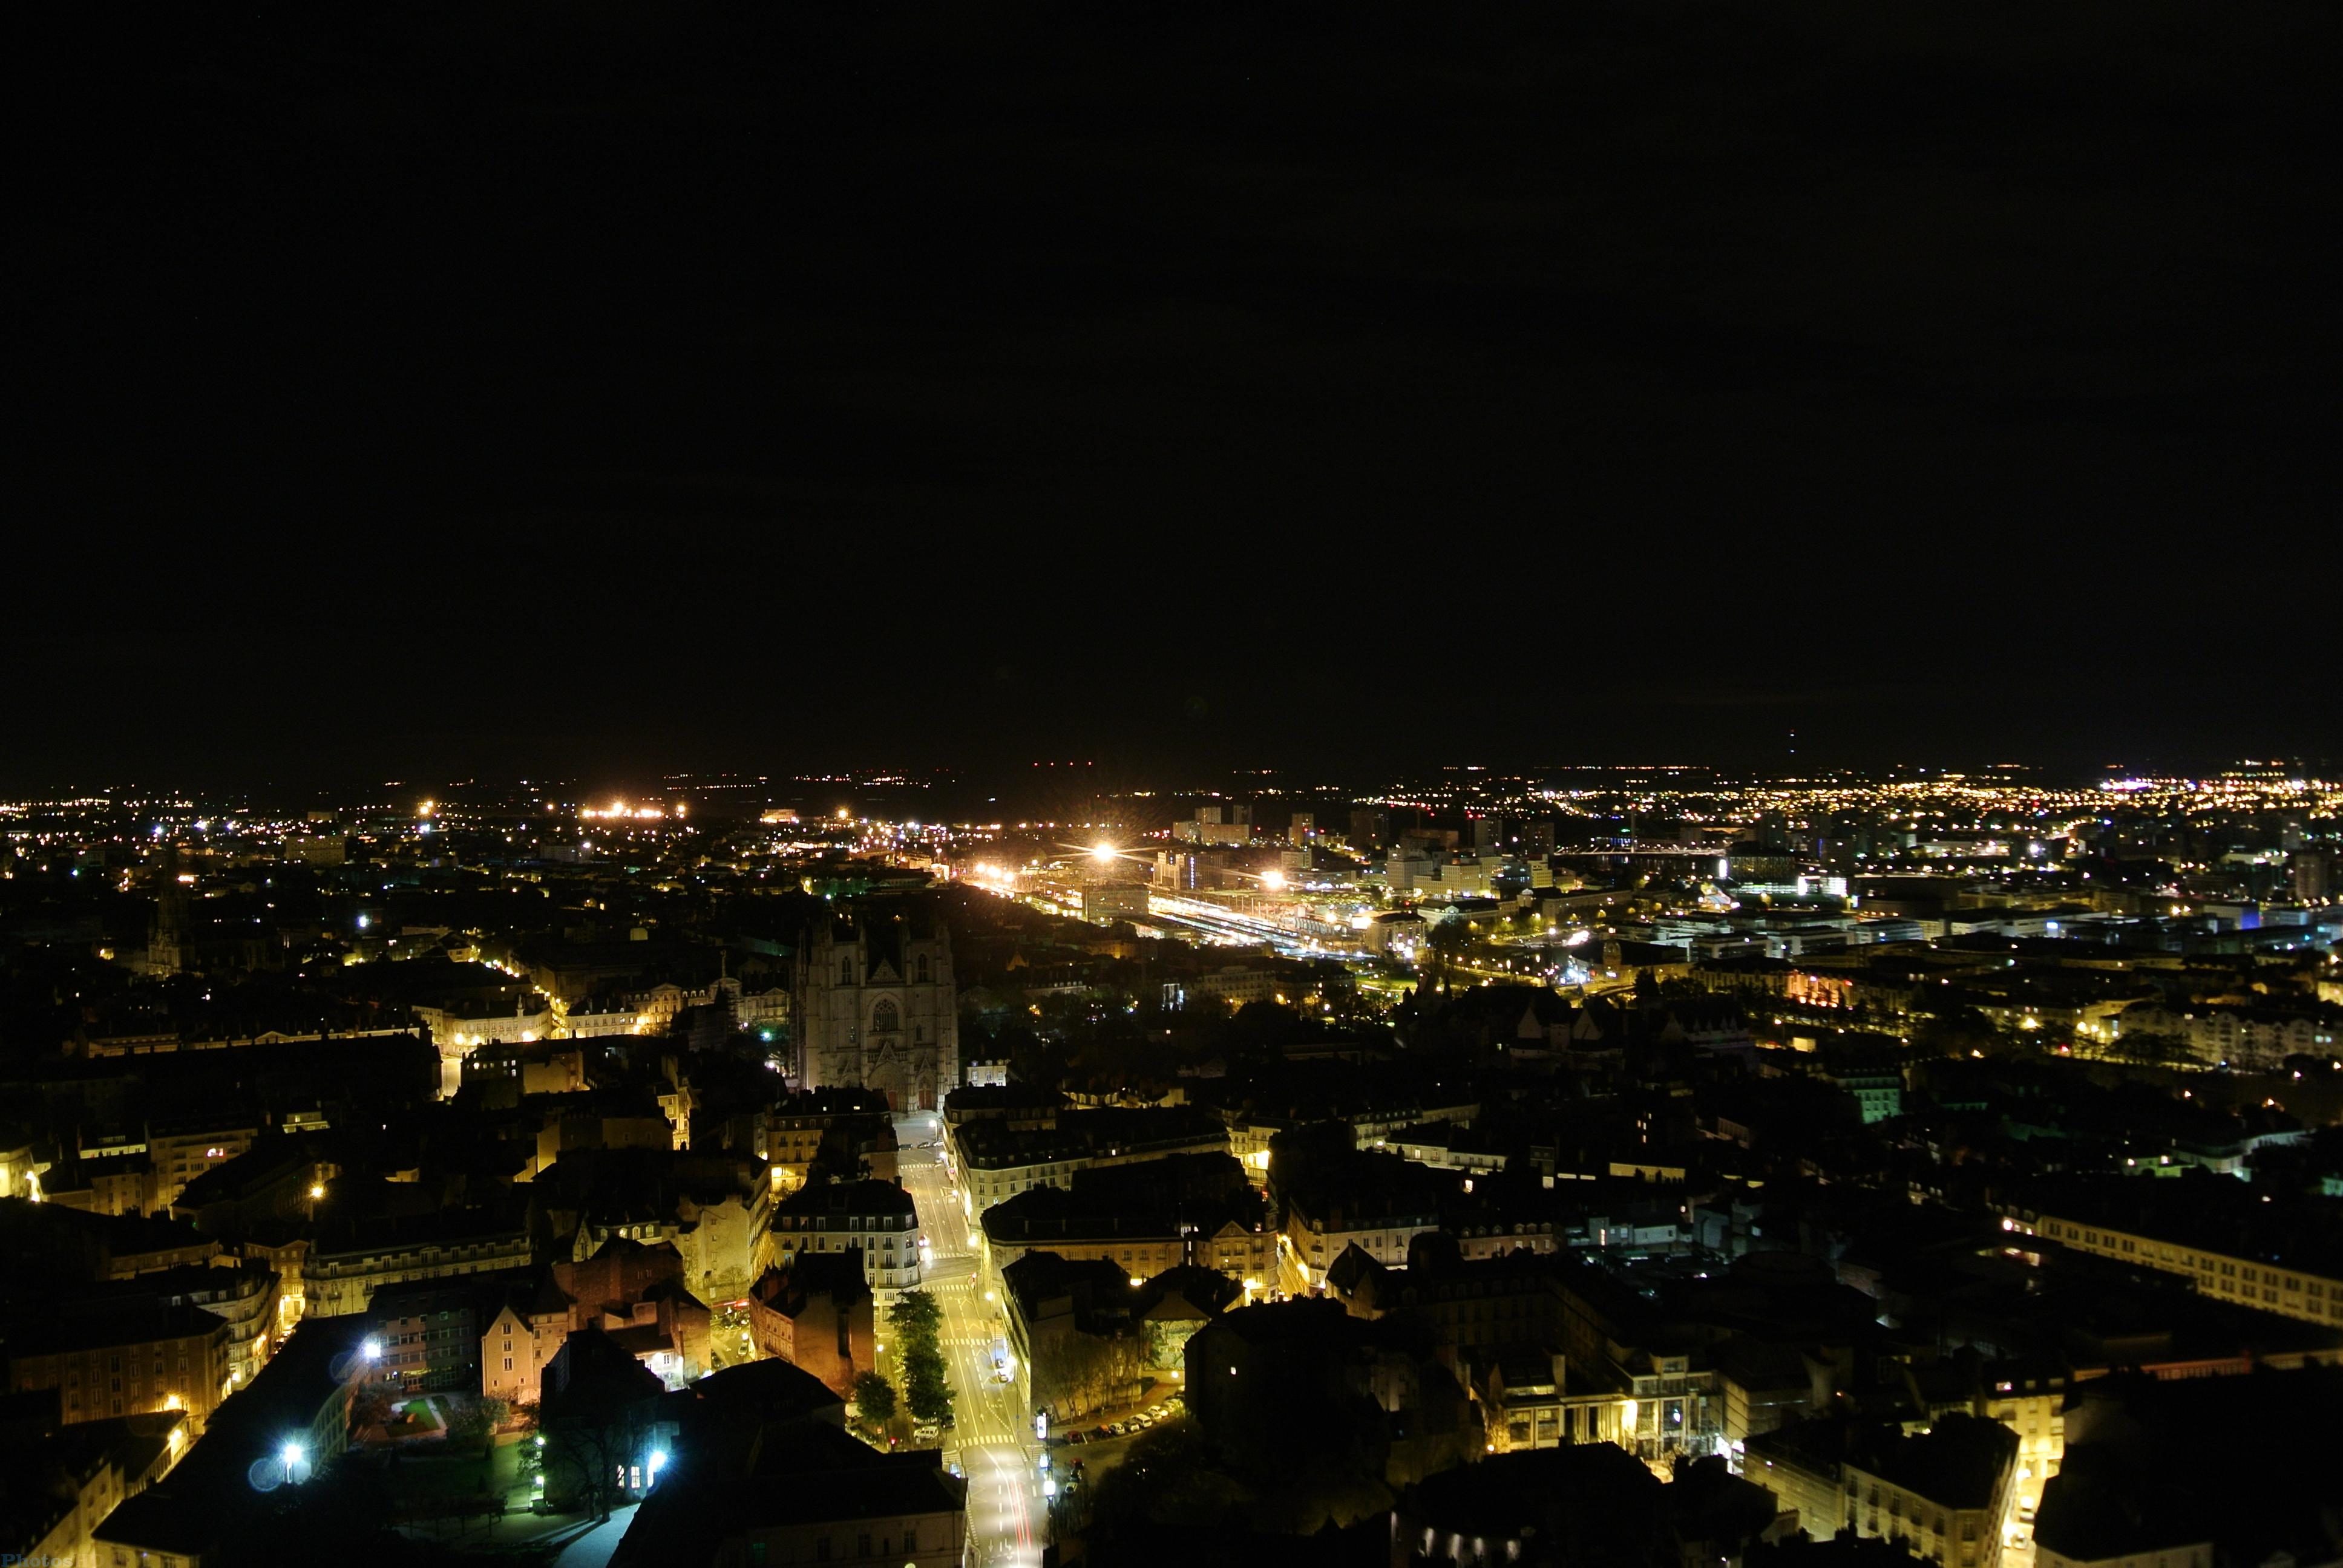 Ville de Nantes de nuit vu du ciel